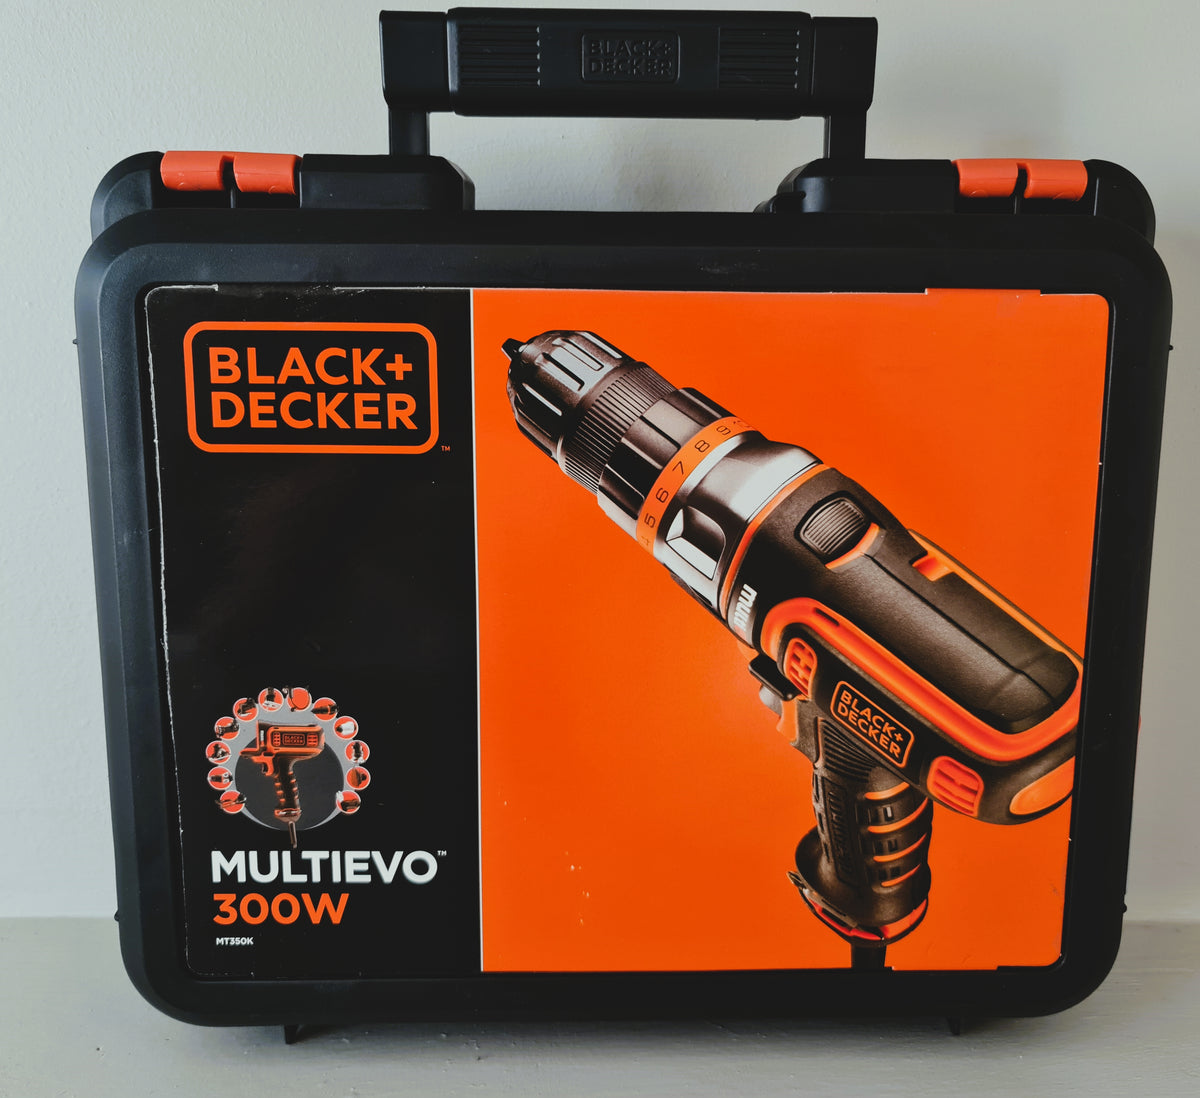 BLACK+DECKER - Corded 18V Multievo Multi - tool with Drill Driver